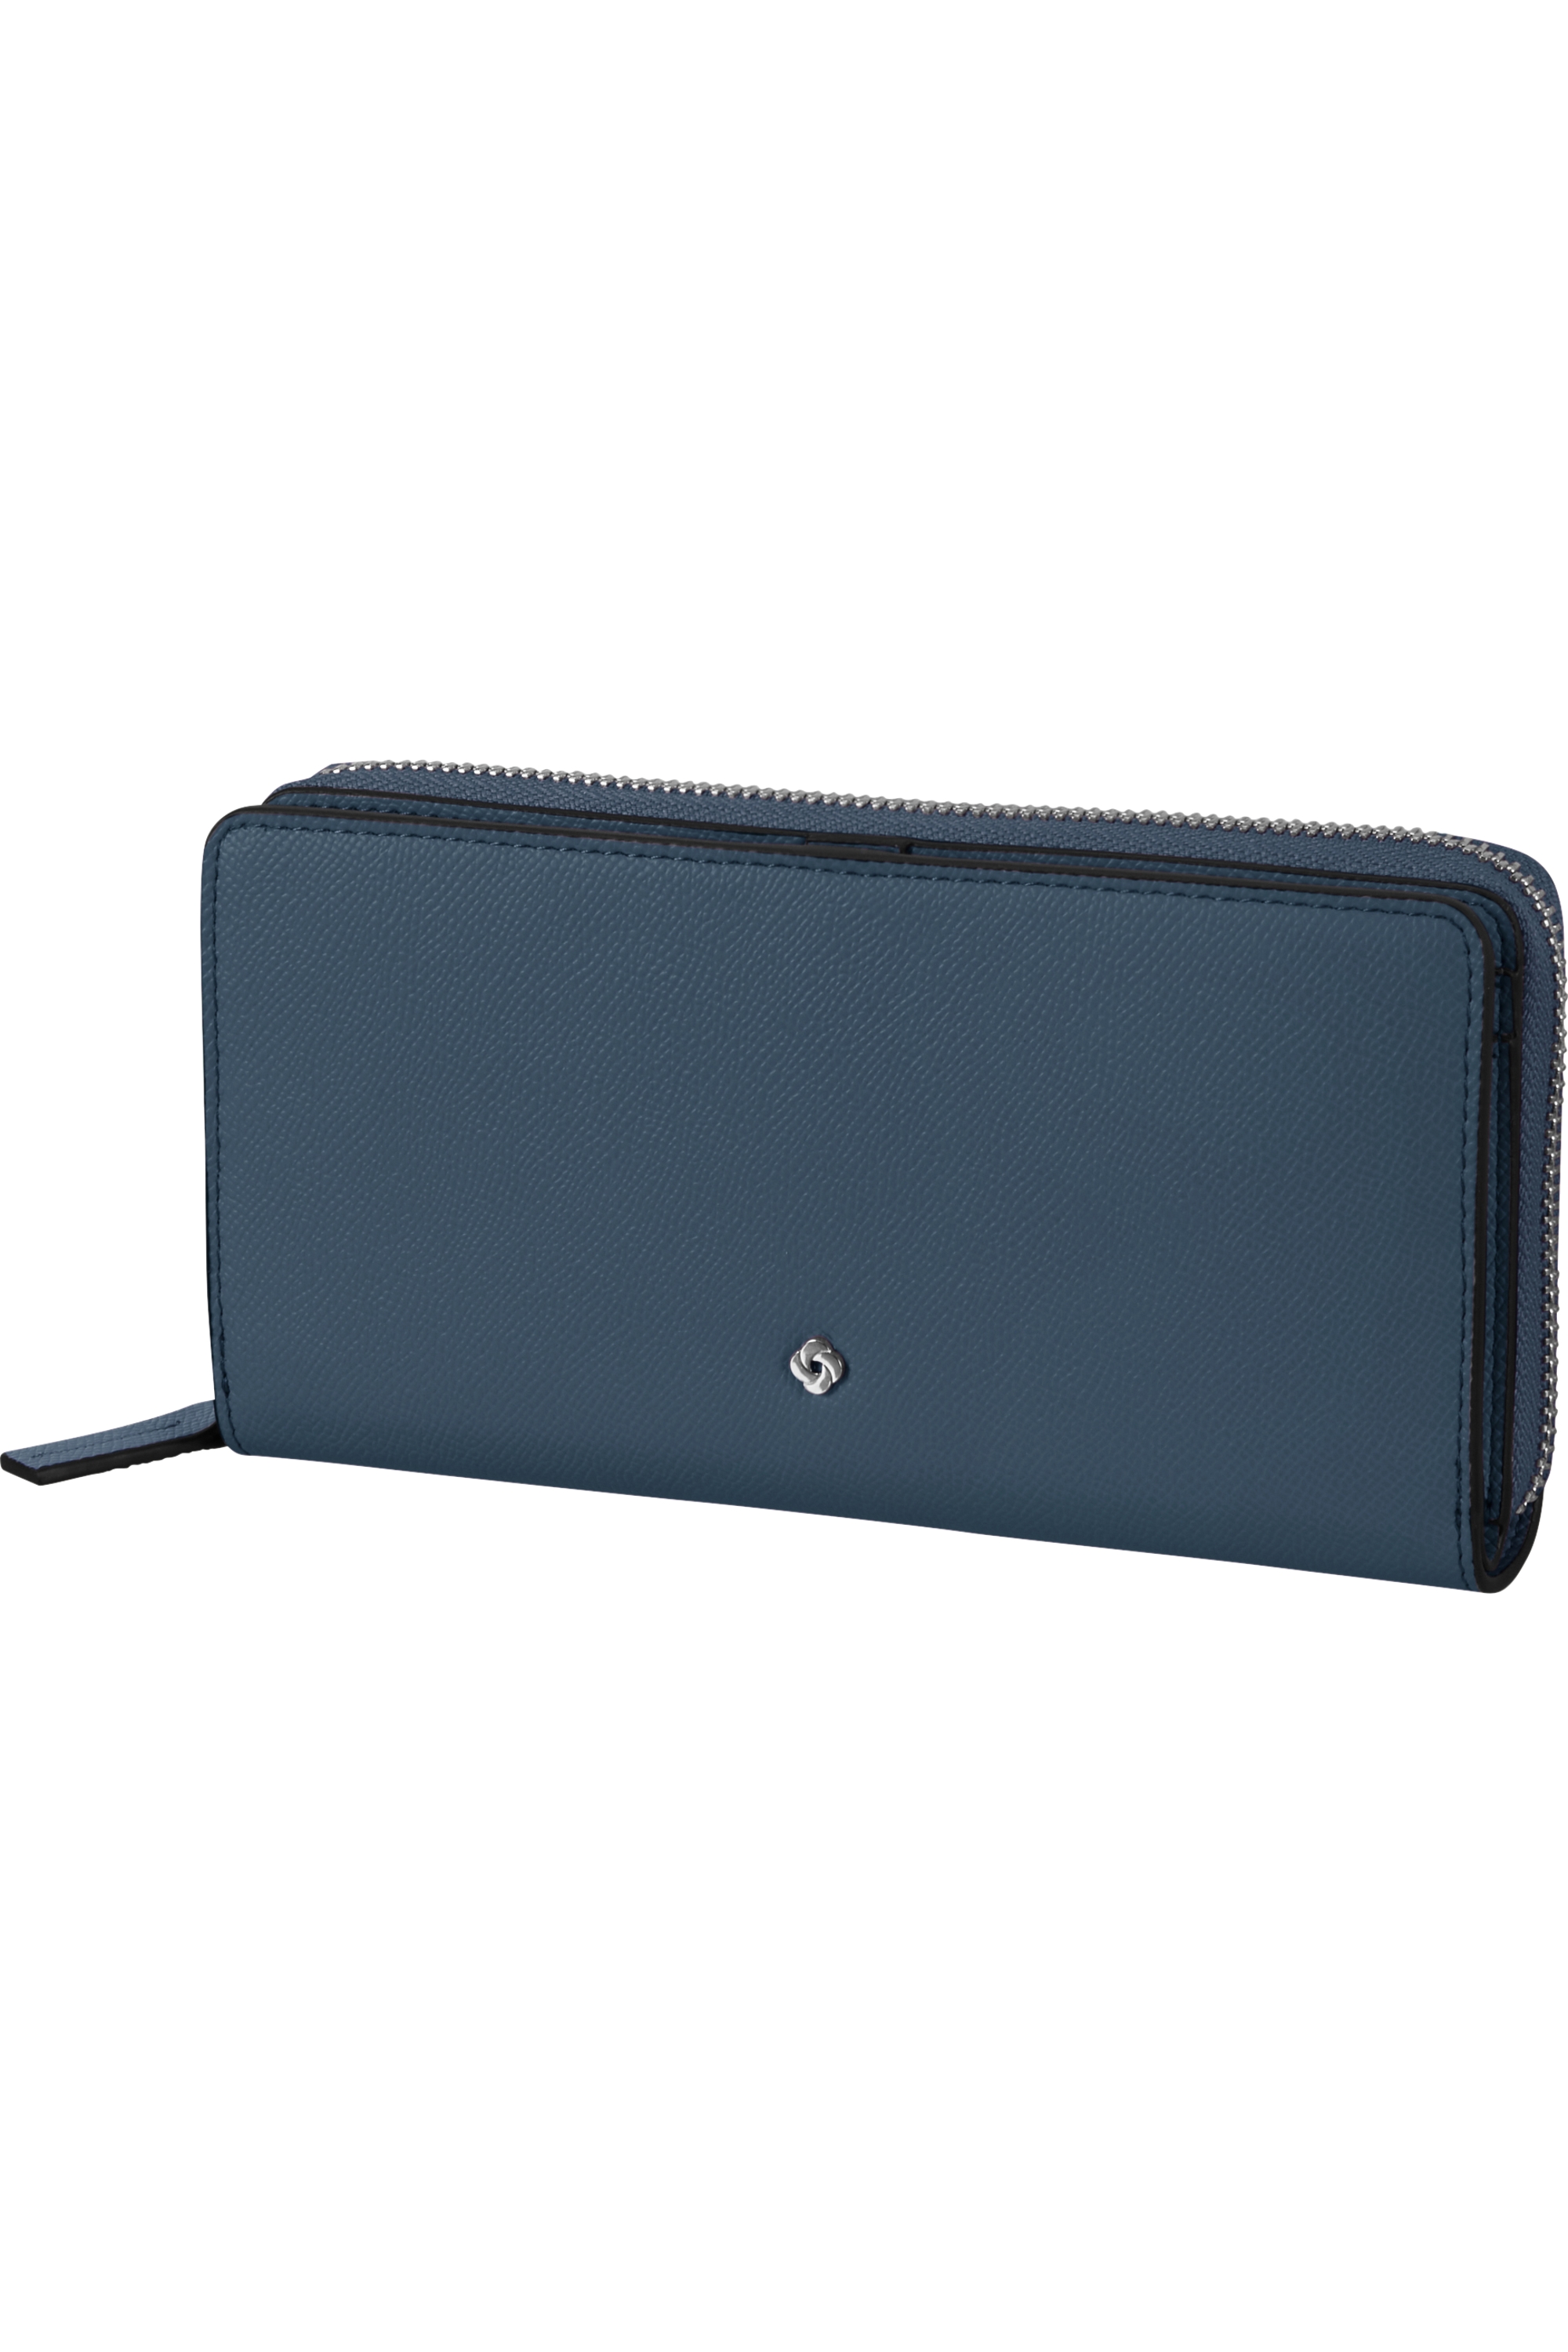 SAMSONITE Dámská peněženka Every-Time 2.0 SLG Blueberry Blue, 19 x 2 x 10 (149546/B043)